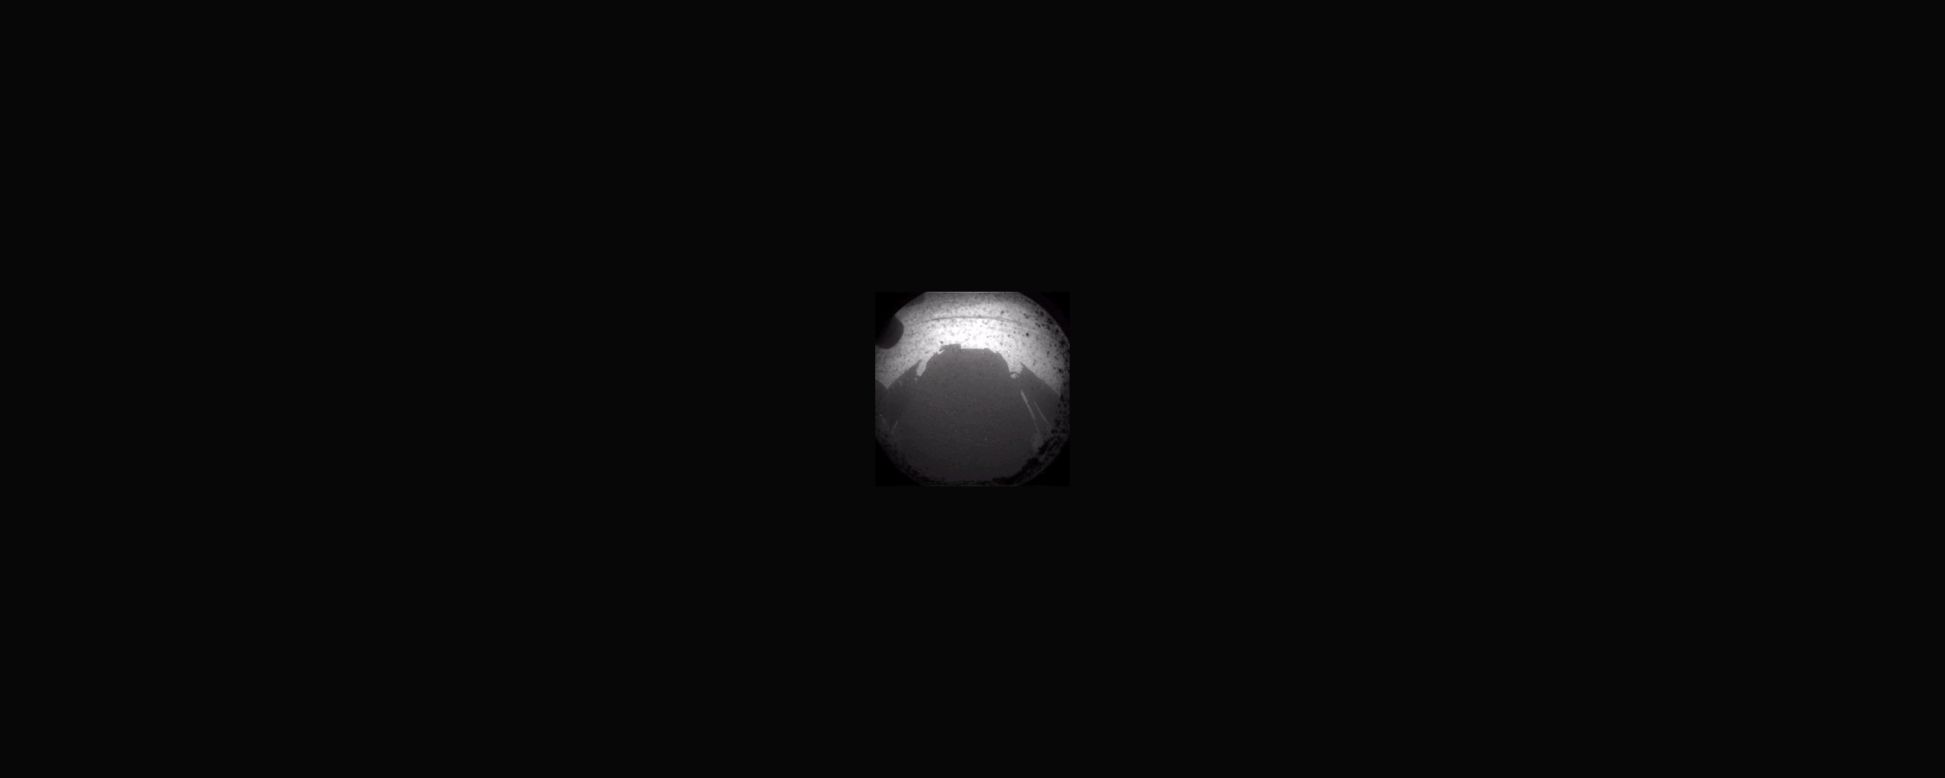 Otra de las primeras imágenes emitidas por Curiosity el 6 de agosto fue la sombra proyectada por el vehículo en la superficie de Marte.